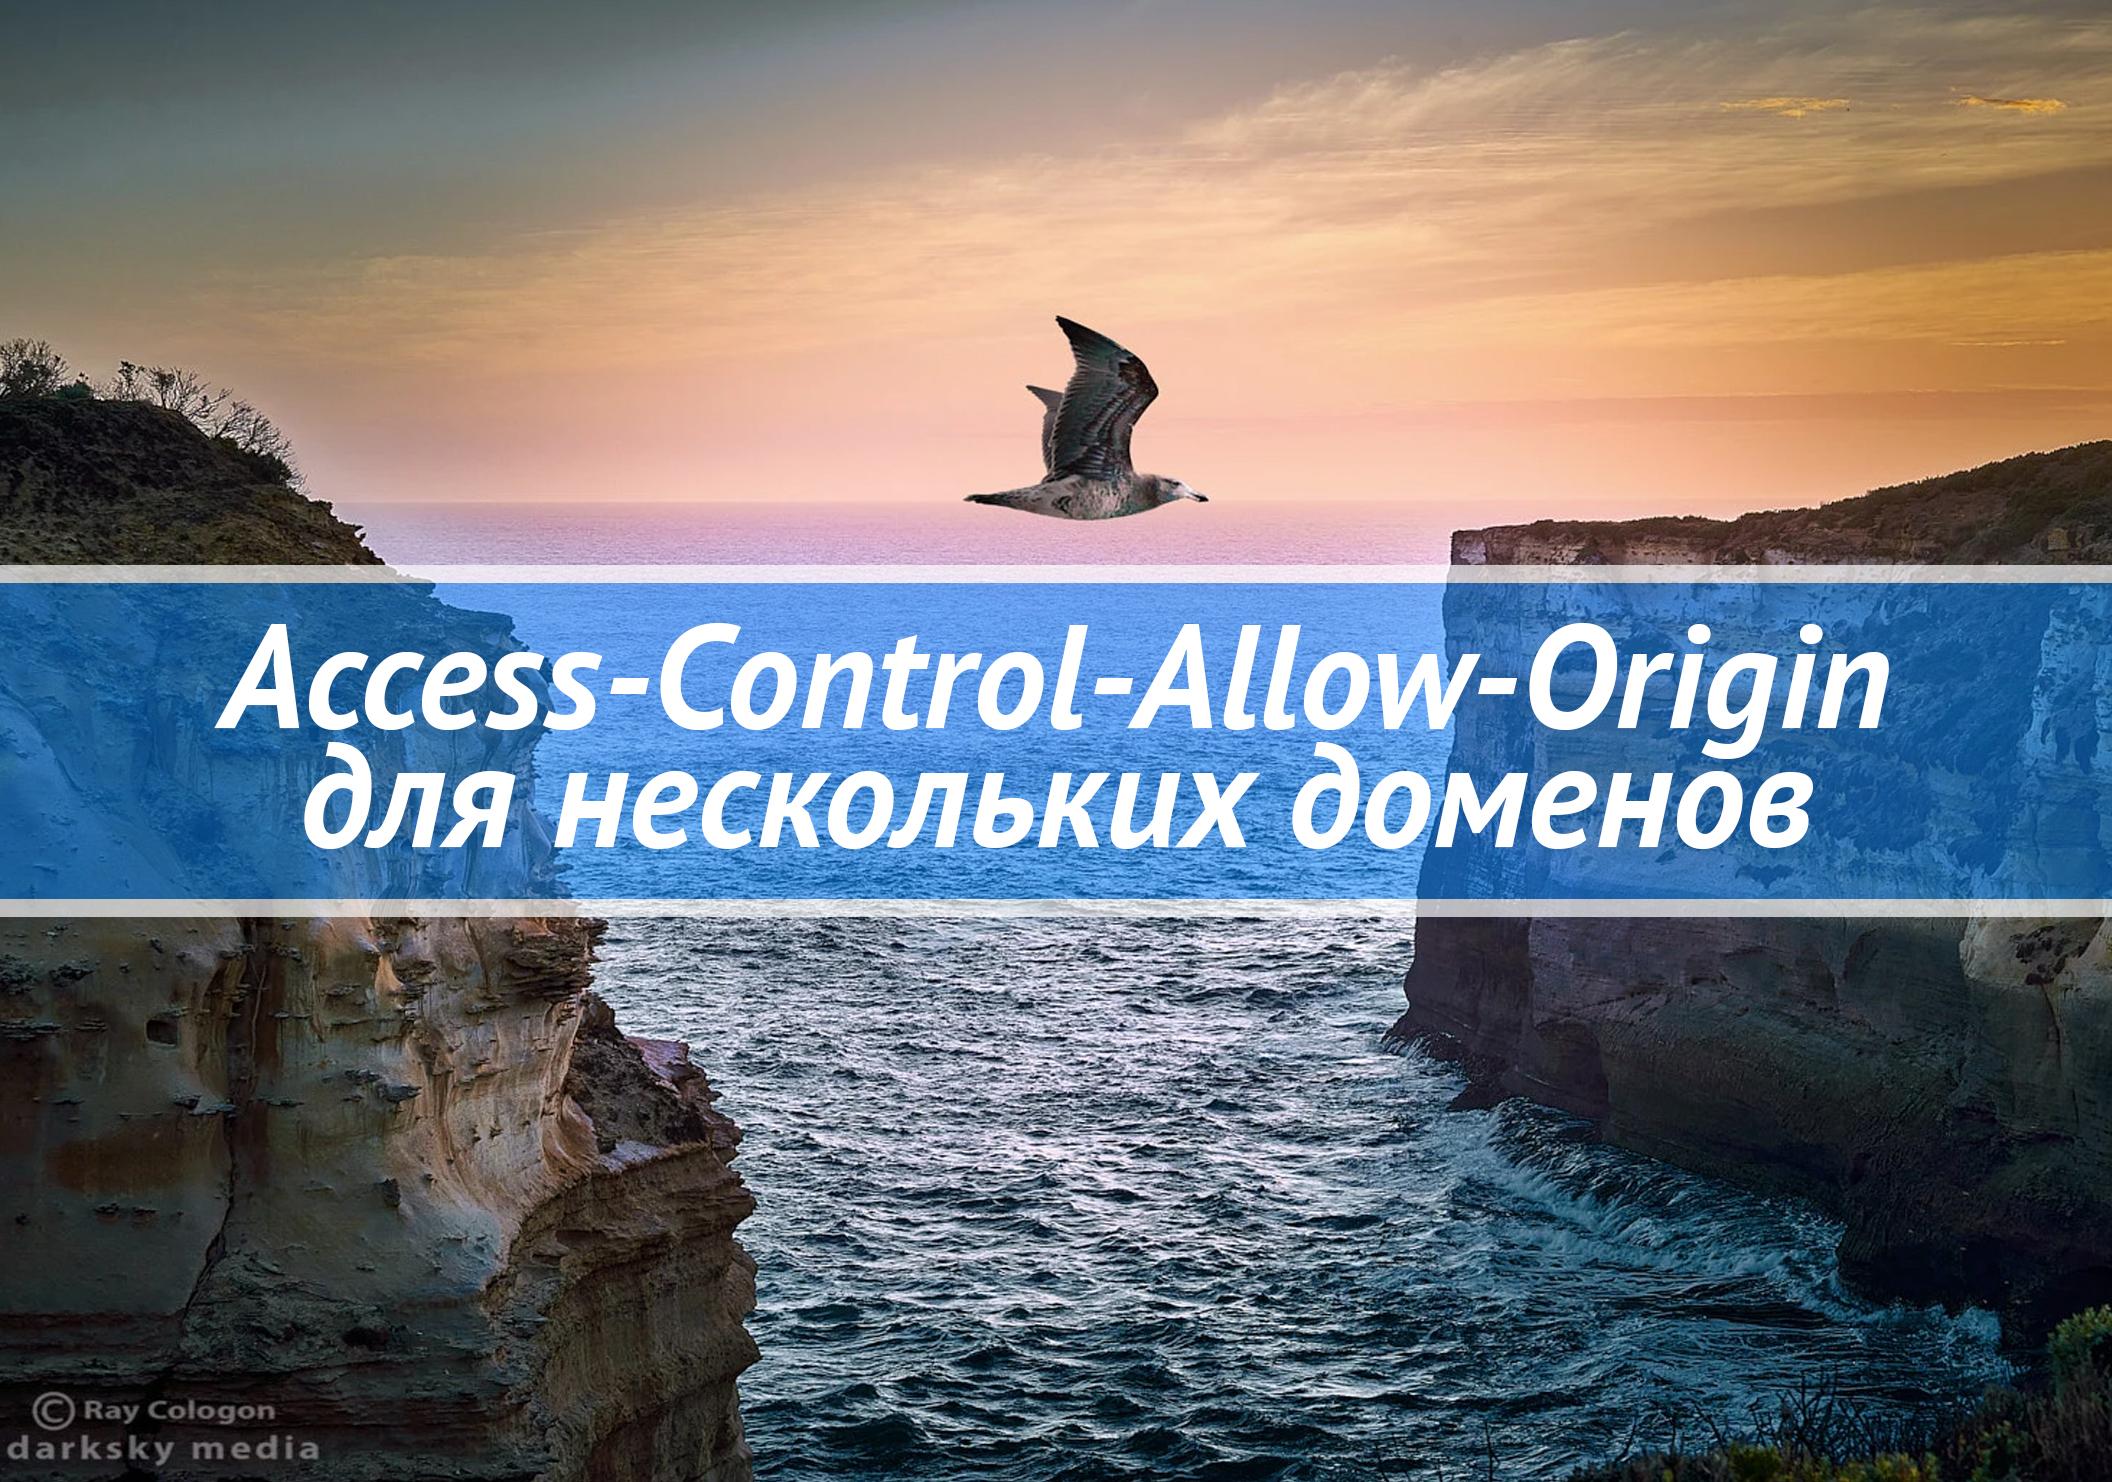 Access-Control-Allow-Origin для нескольких доменов